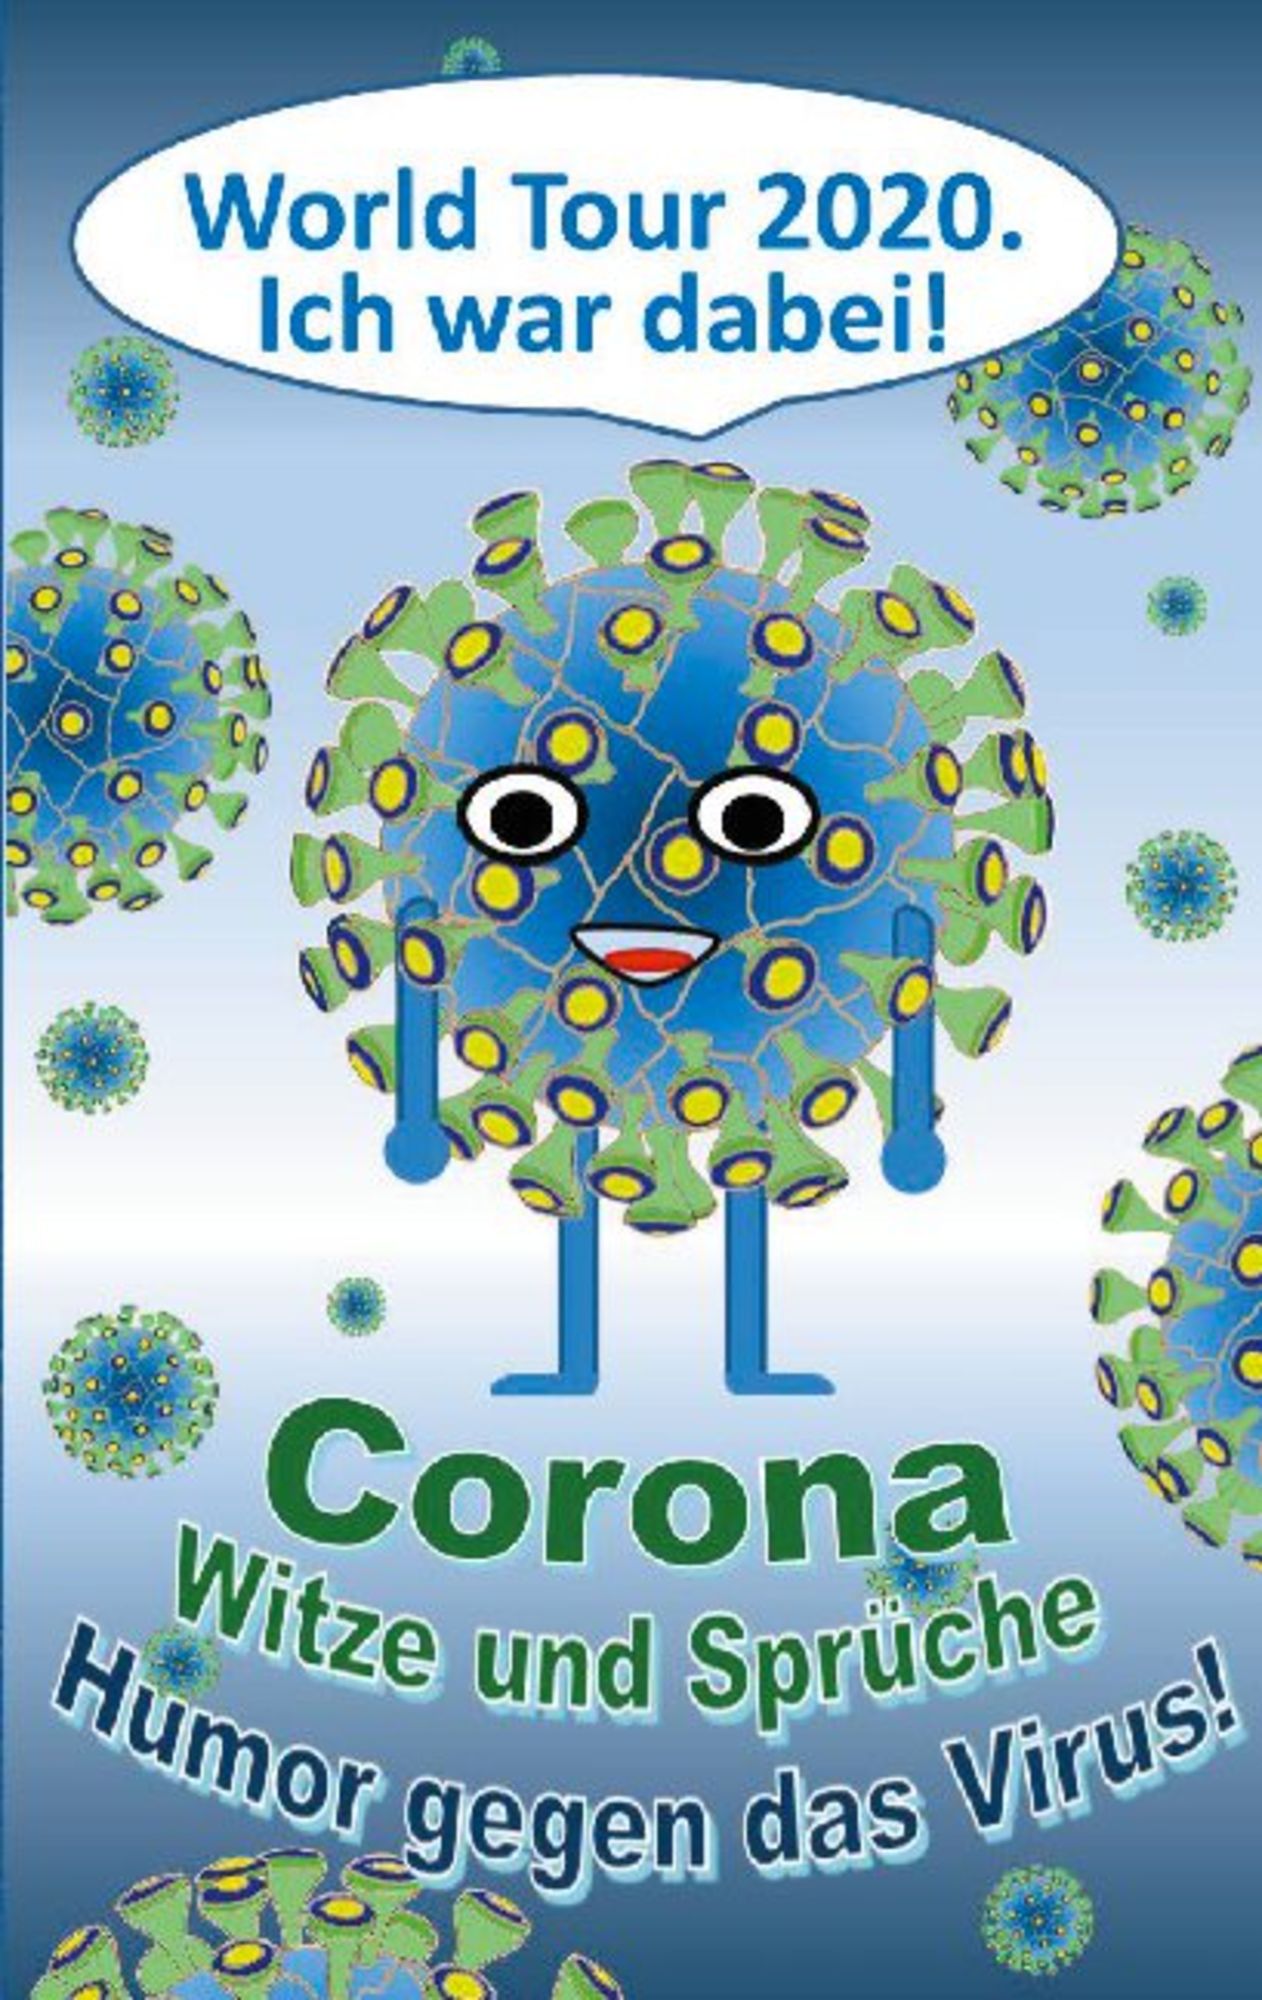 Corona Witze und Sprüche - Humor gegen das Virus!' von 'Theo Taane' - Buch  - '978-3-7526-7222-0